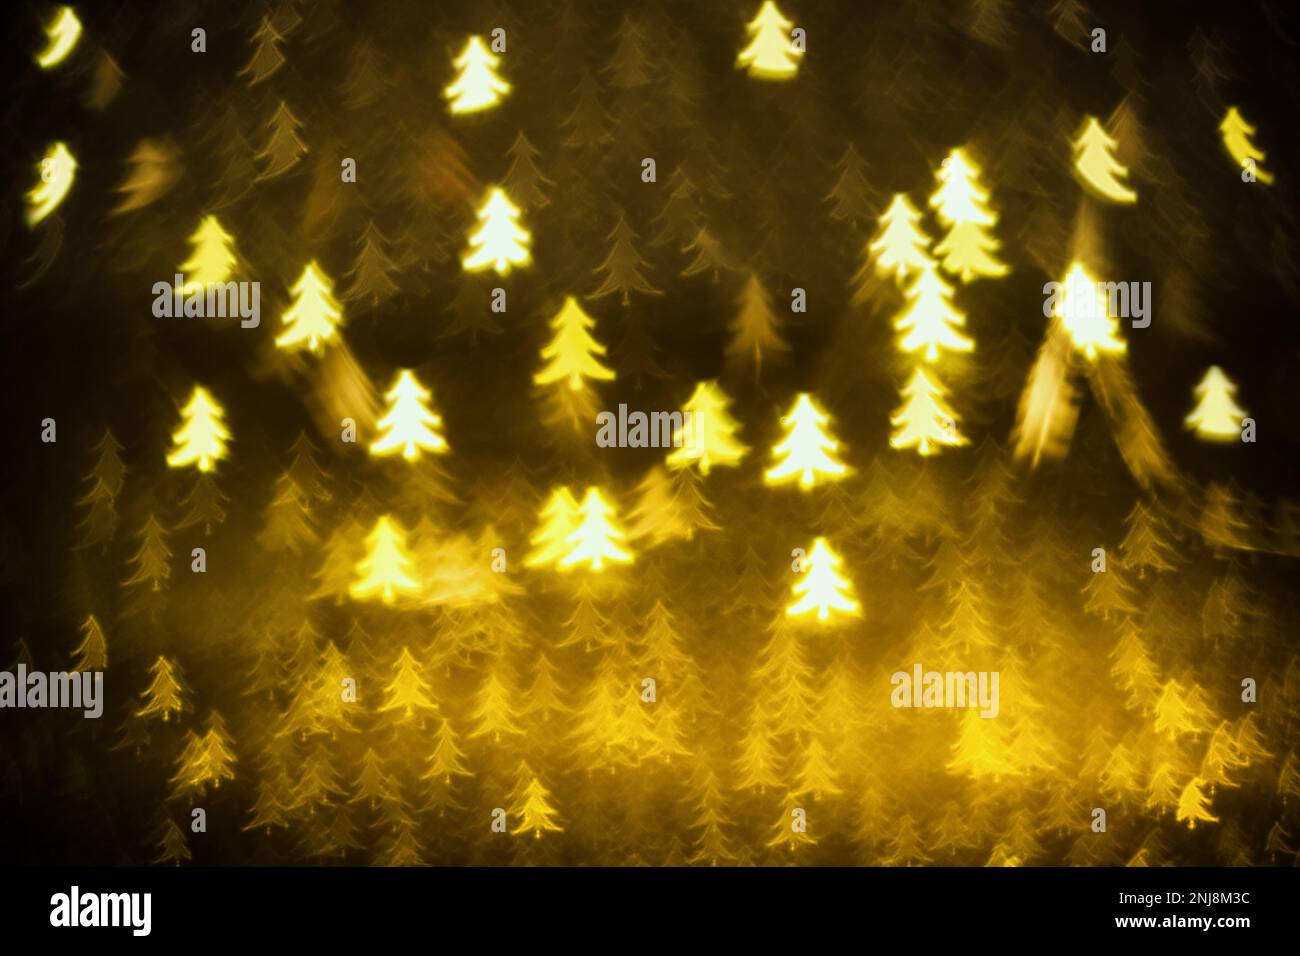 Sfondo dorato scintillante con alberi di Natale. Trama scintillante con il bokeh e le luci, lamina d'oro in metallo lucido Foto Stock